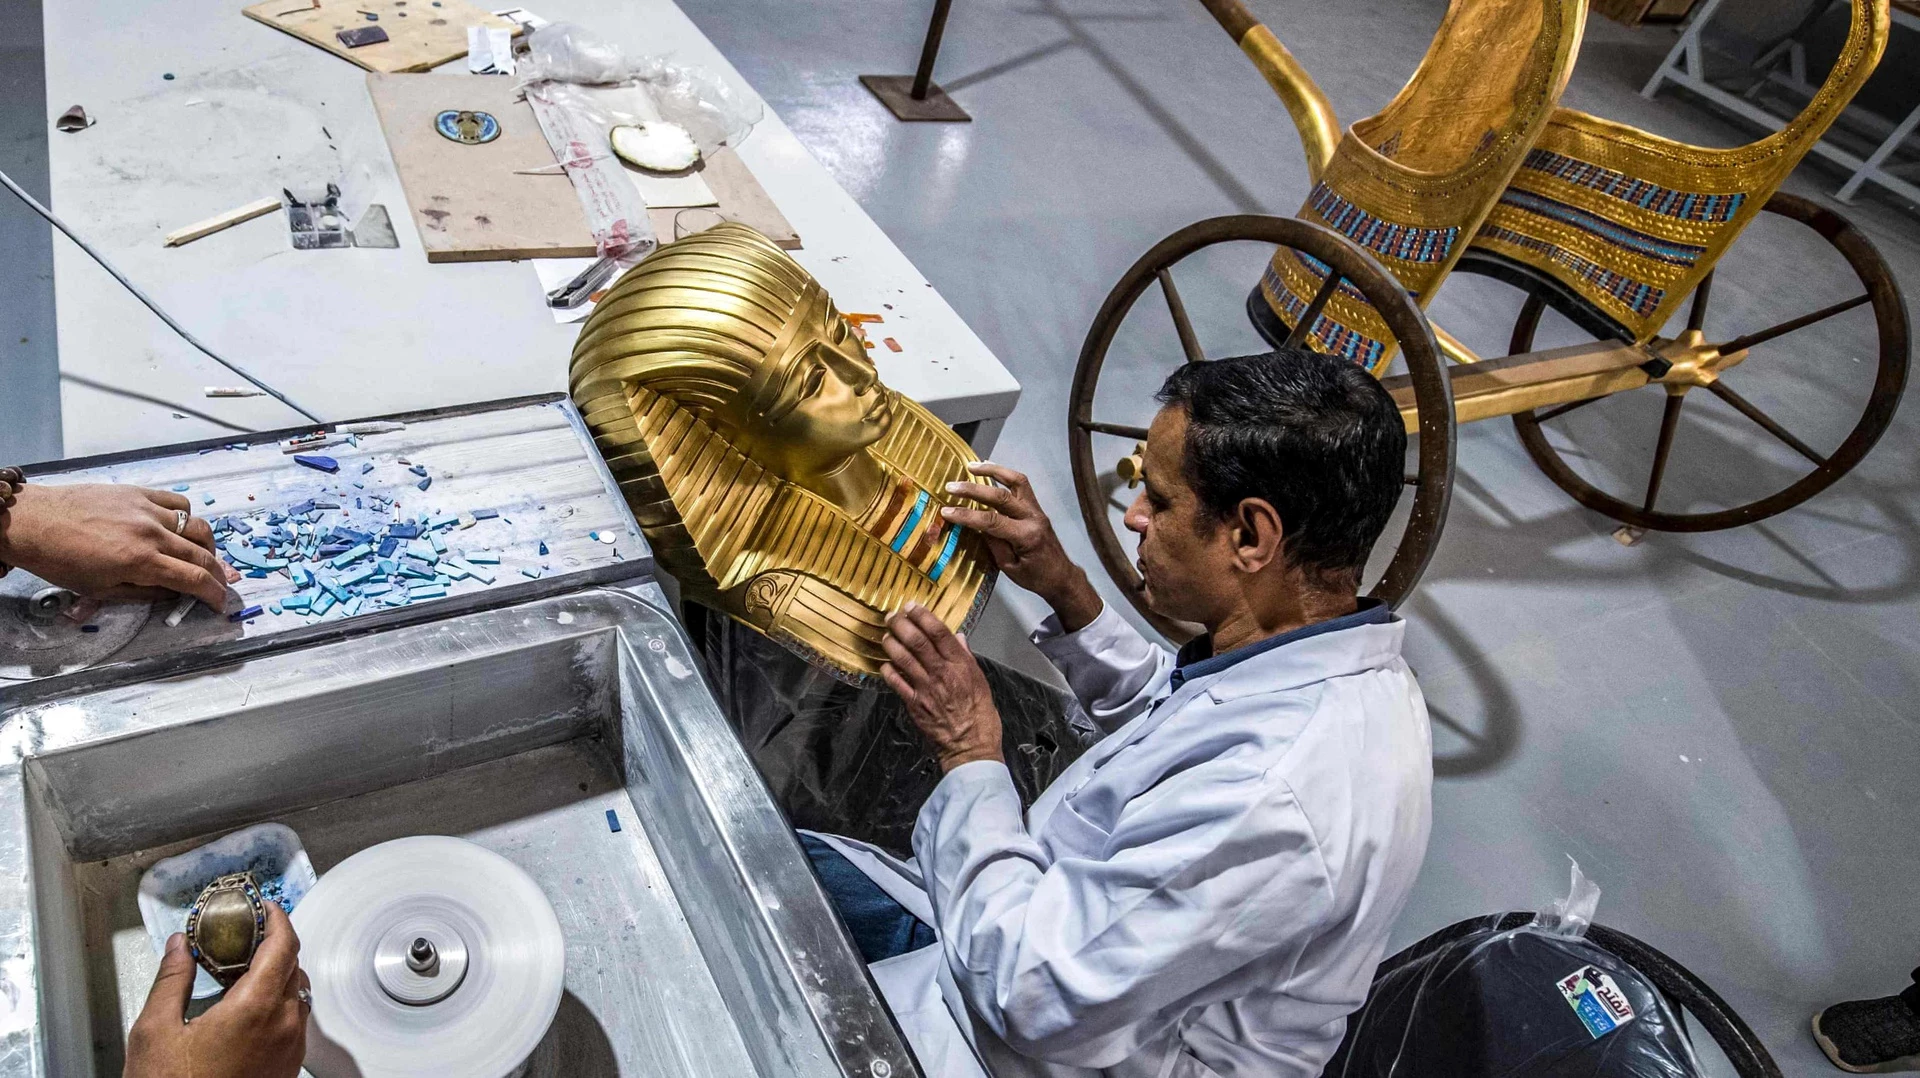 Nhà máy Konouz (có nghĩa là "Kho báu" trong tiếng Ả Rập) của chính phủ Ai Cập nằm ở Obour, phía đông thủ đô Cairo. Khuôn viên nhà máy có diện tích rộng 10.000 m2. Tại đây, các nghệ nhân tập trung sản xuất hàng nghìn bản sao cổ vật từ nhiều loại nguyên liệu, có thể kể đến như thạch cao, gỗ, đá, gốm, vàng...